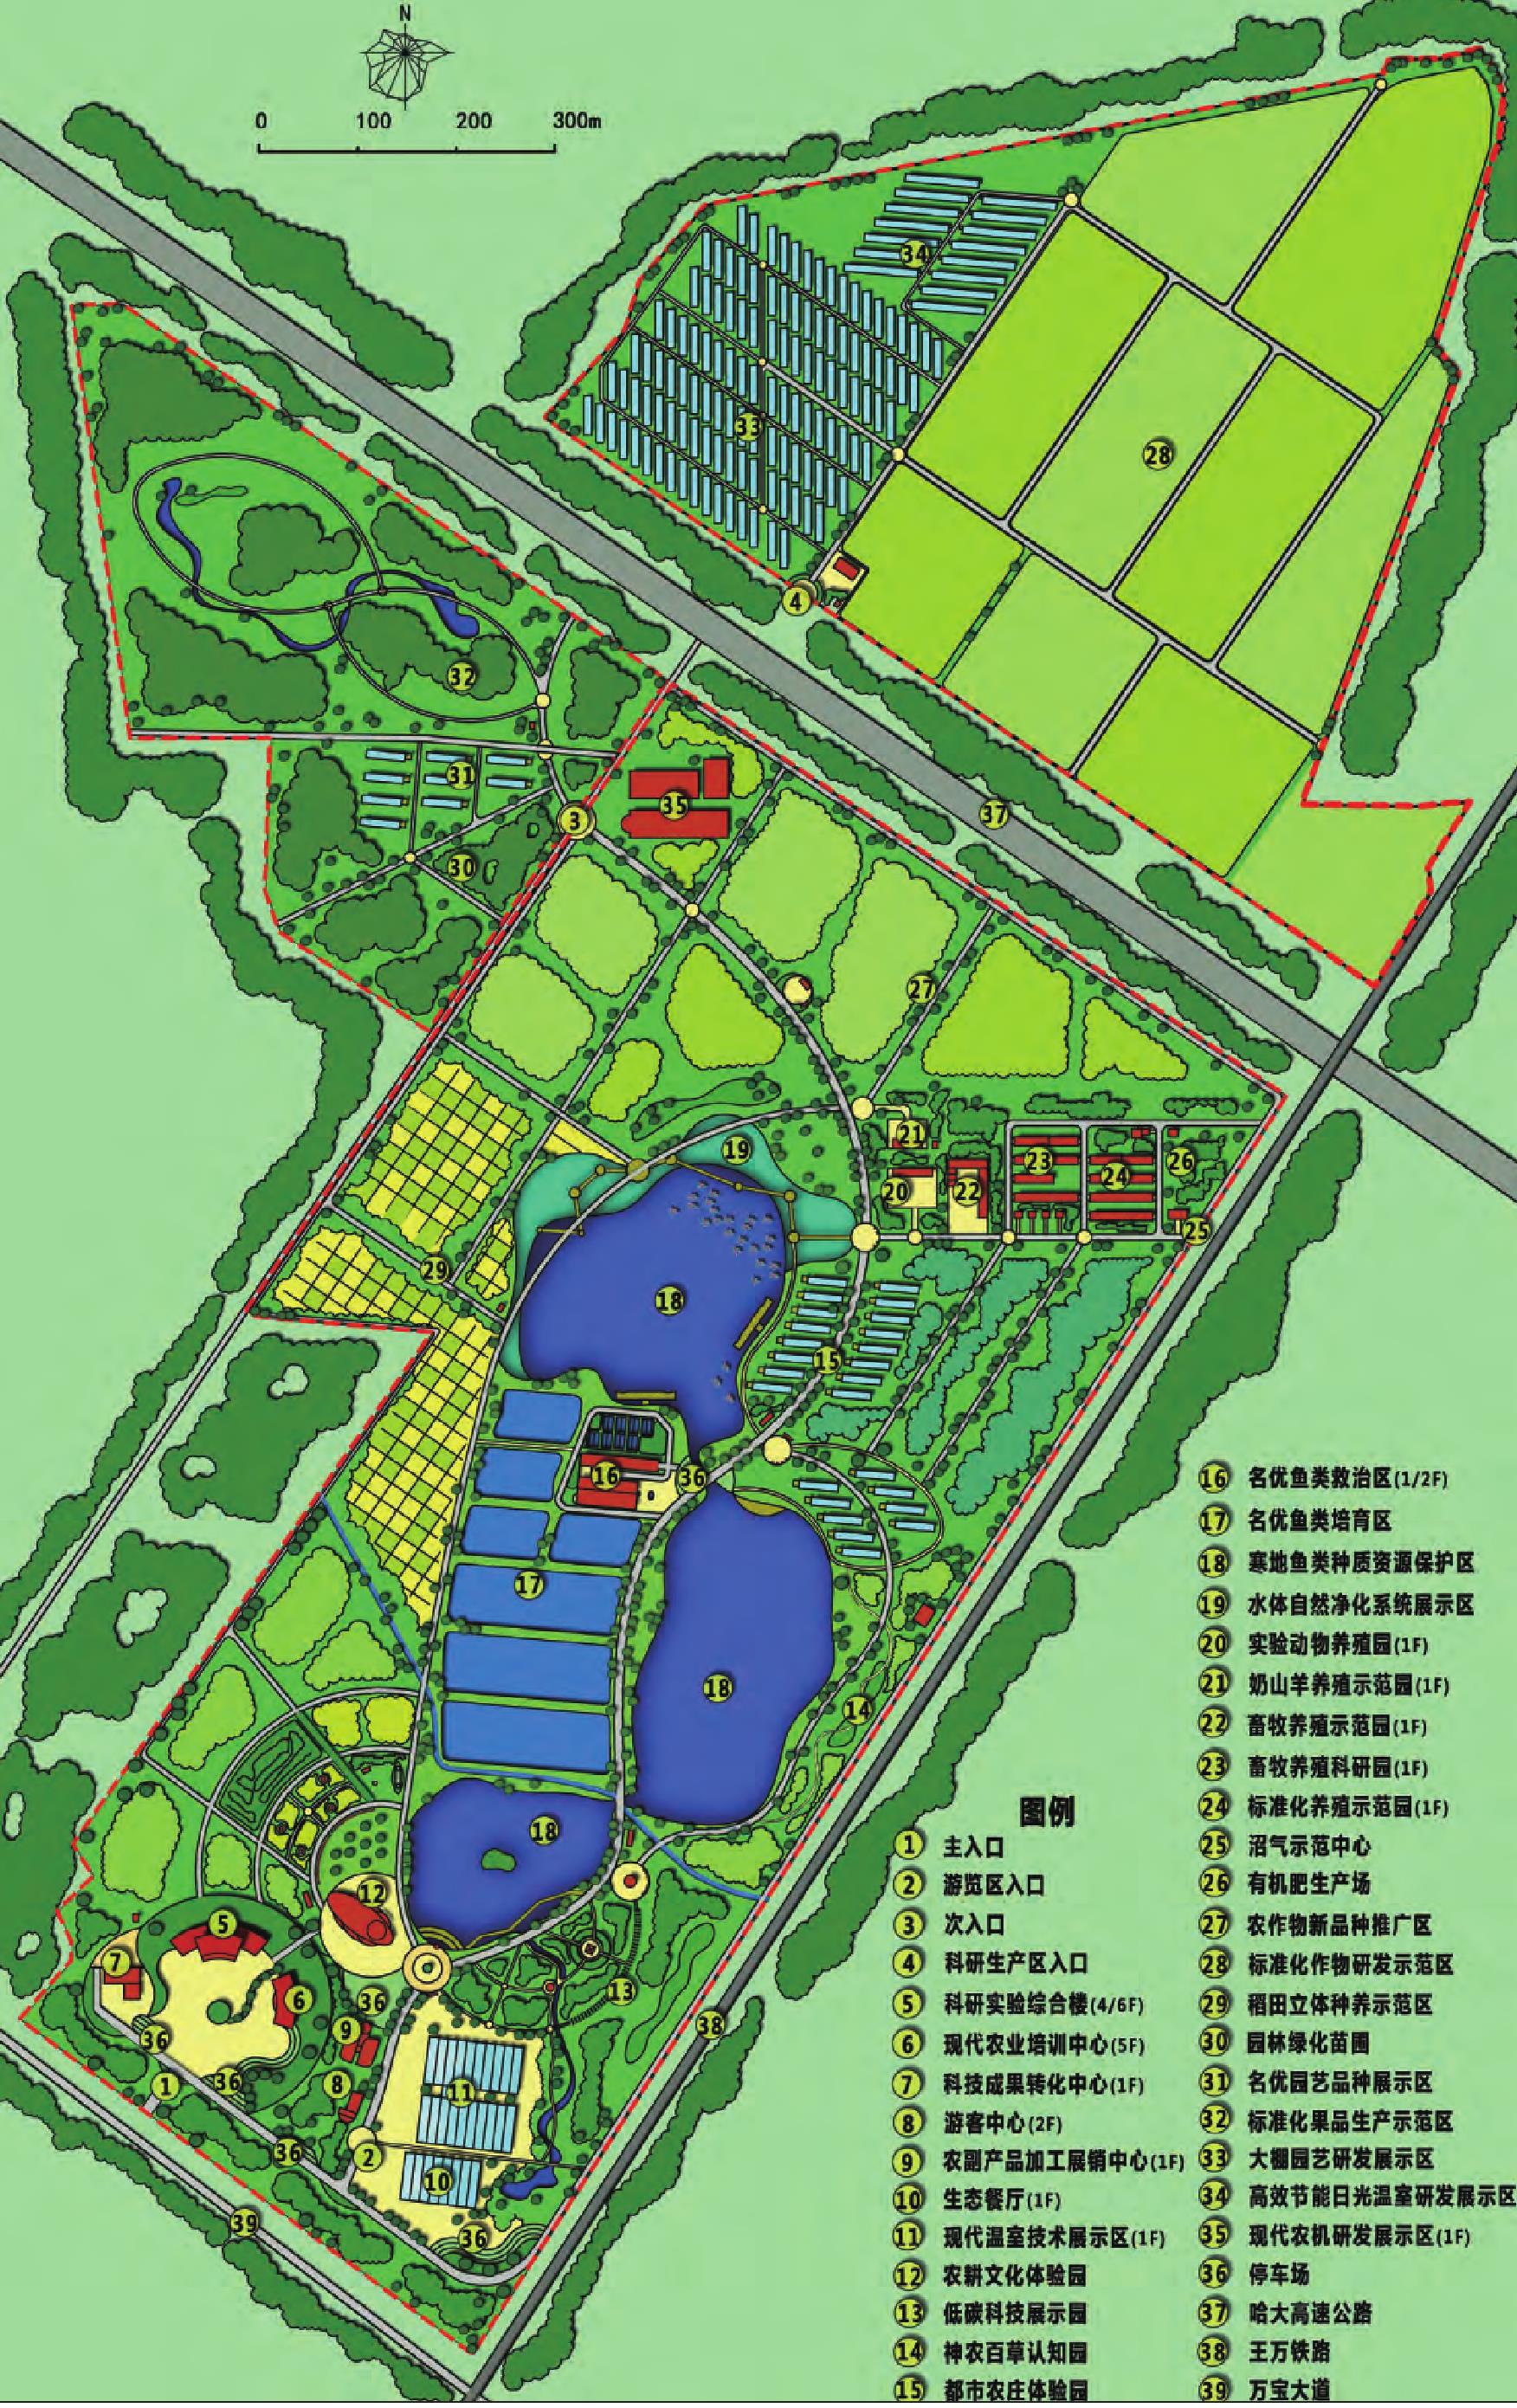 河南濮阳高效观光示范带总体规划方案设计-绿色生态产业带-中国城乡规划网